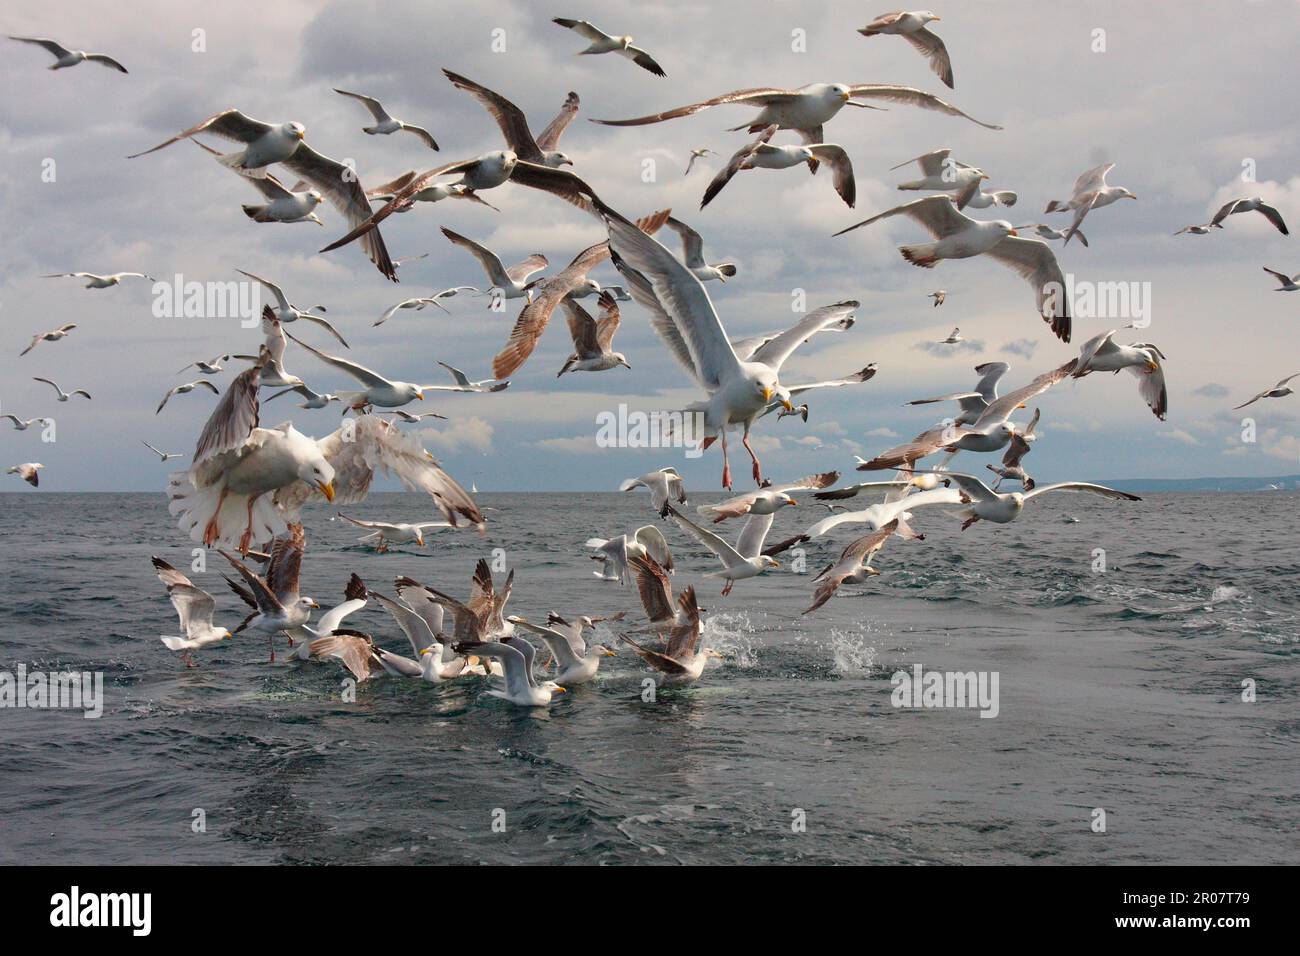 Gabbiano di aringa europeo (Larus argentatus) adulti e immatures, immersioni di gregge per pesci nel mare, Firth of Forth, Scozia, Regno Unito Foto Stock